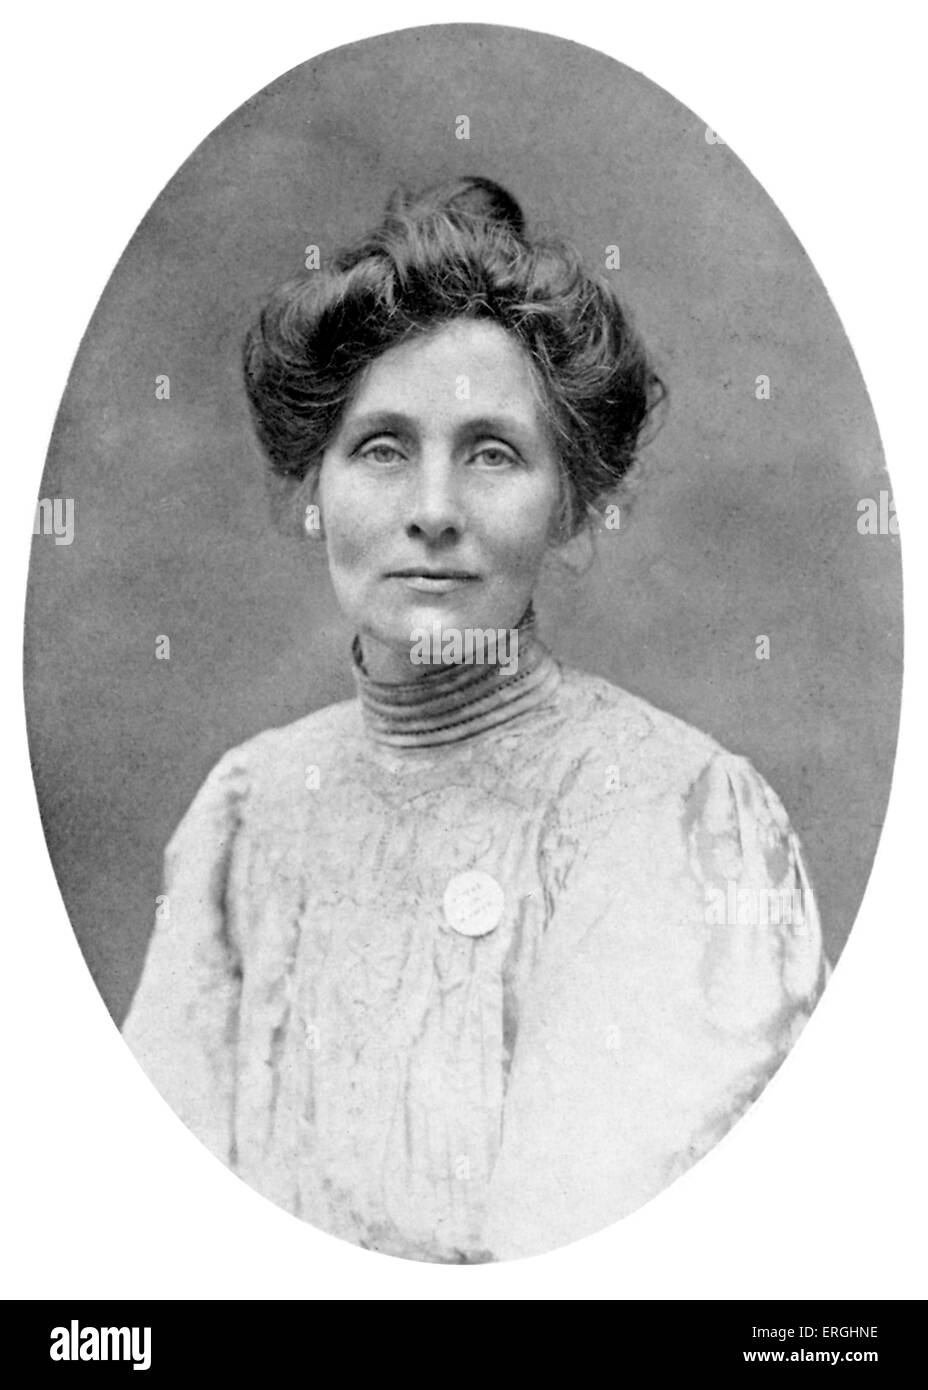 Emmeline Pankhurst - Porträt. Britischer politischer Aktivist und Führer der britischen Suffragetten-Bewegung. 15. Juli 1858 – 14. Juni 1928. Stockfoto